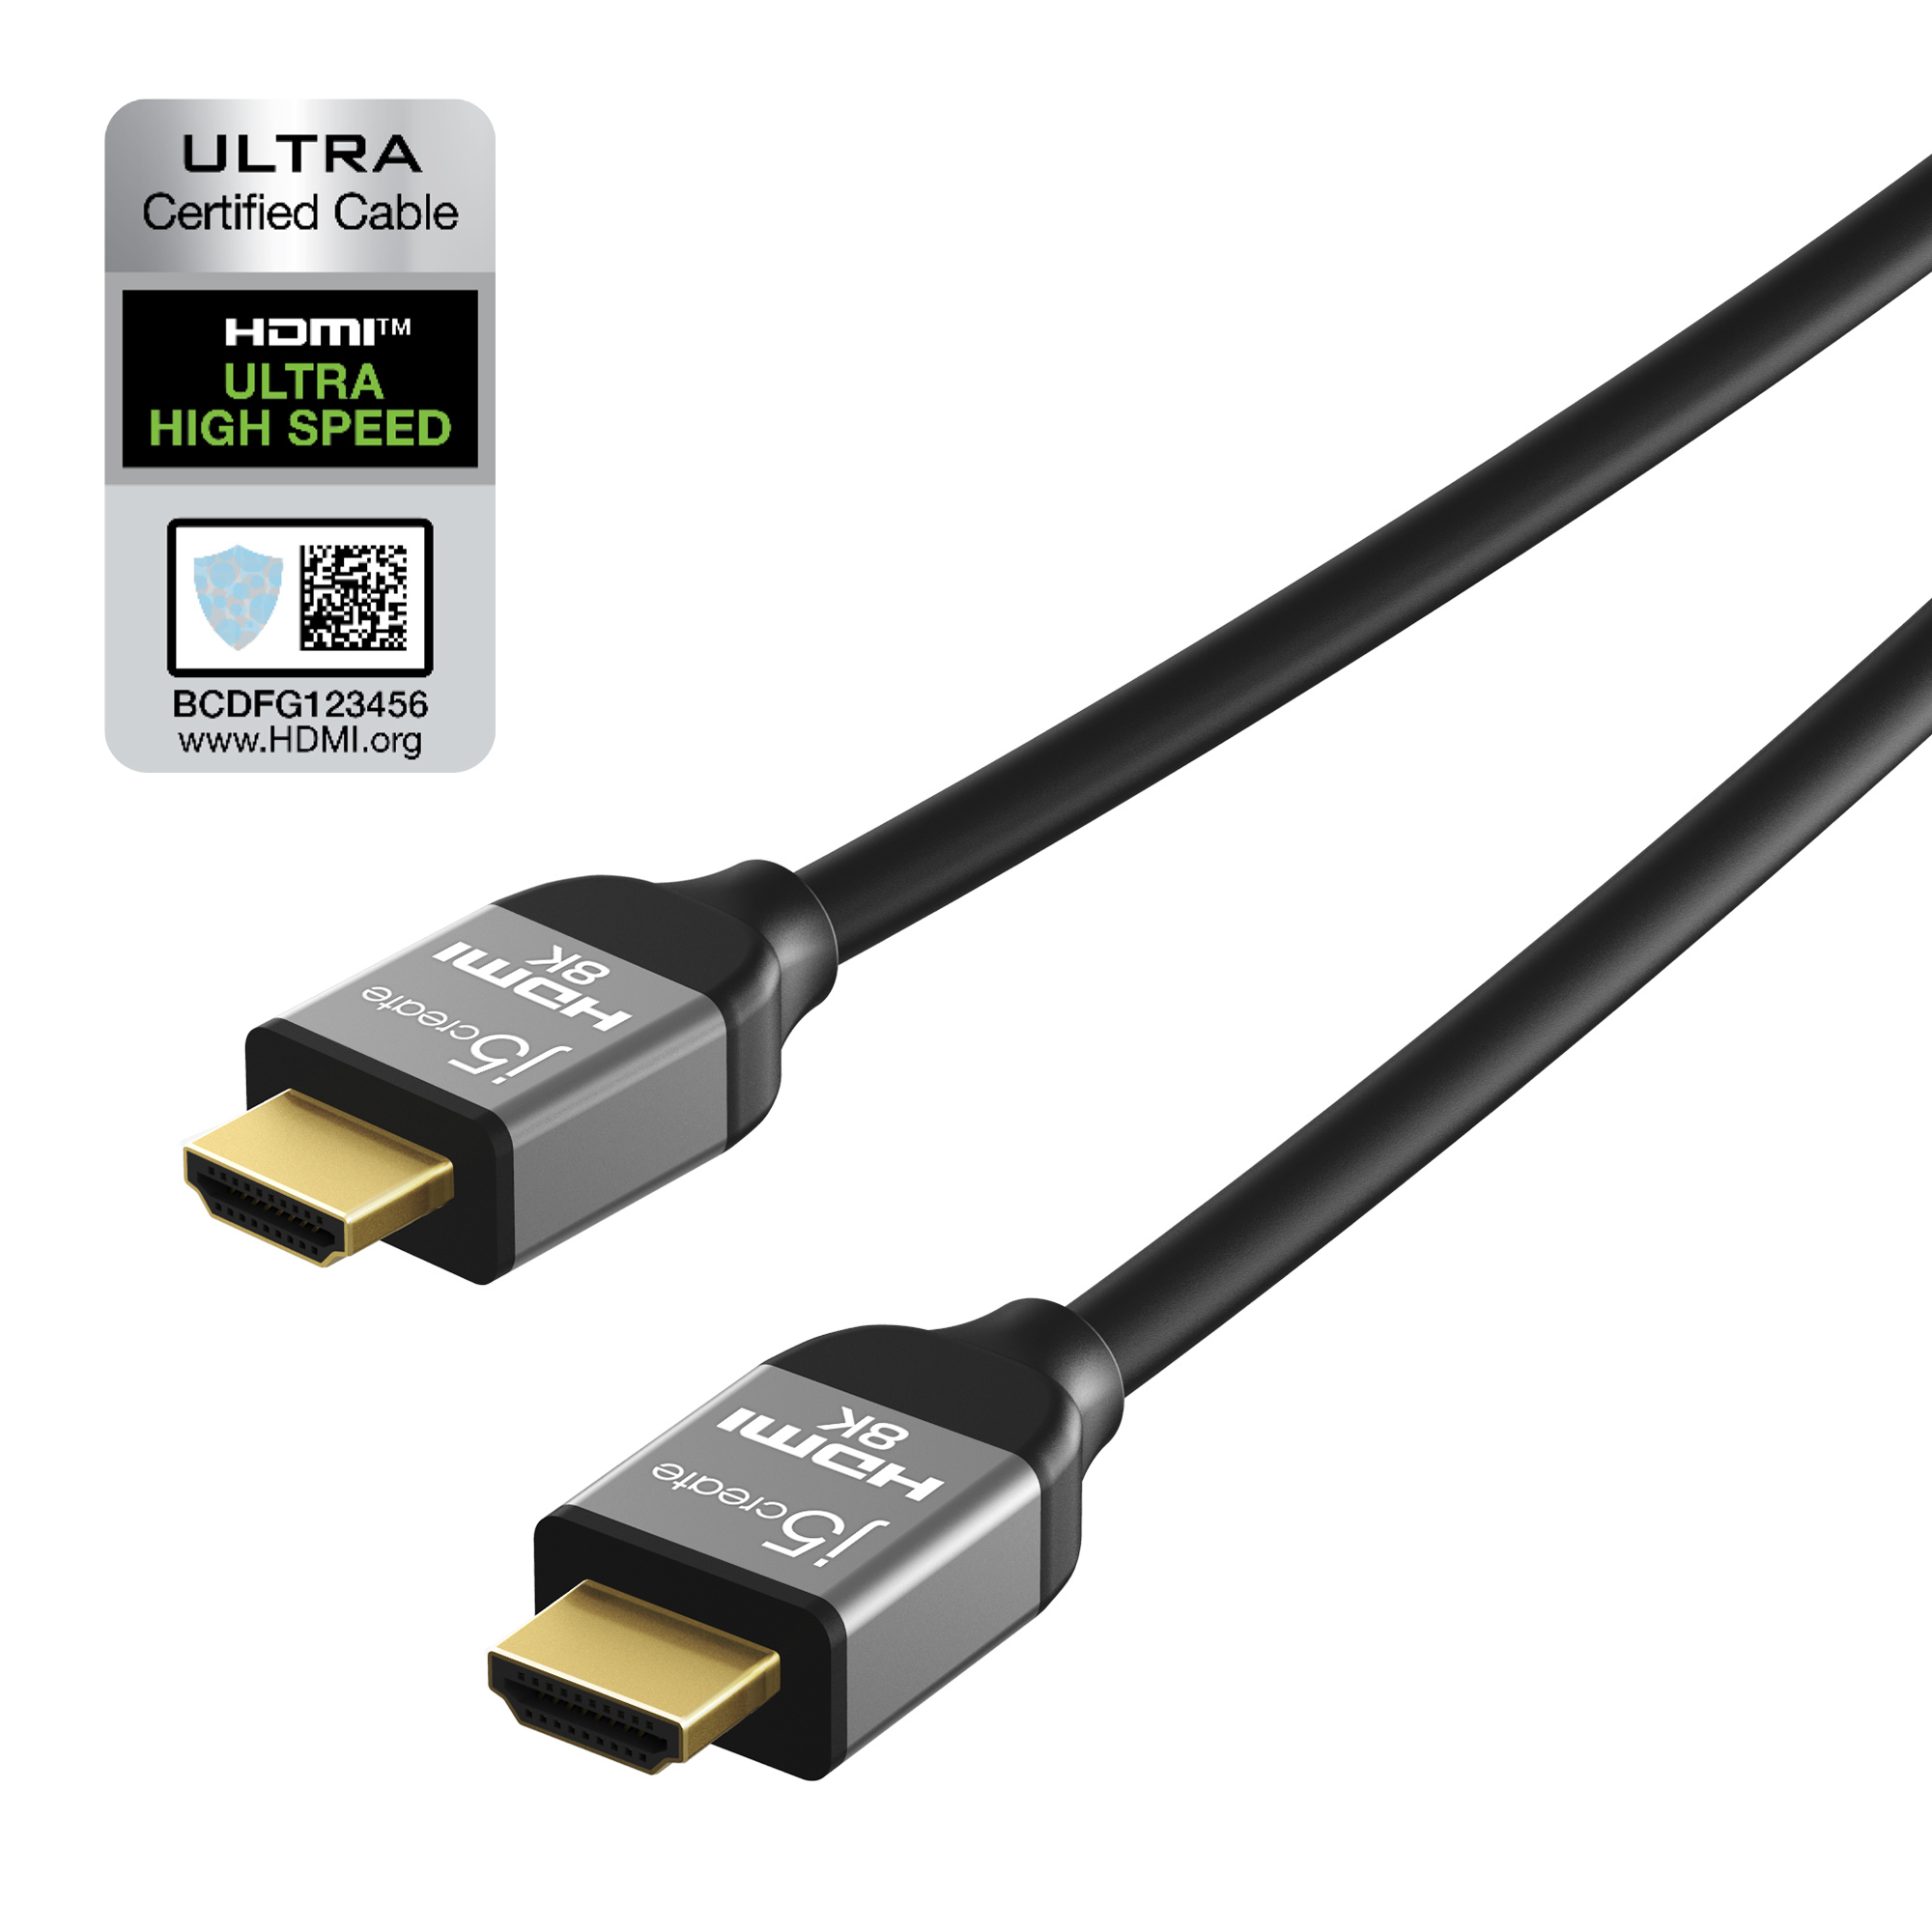 Schwarz Kabel, HDMI Ultra und Speed JDC53-N Grau 8K UHD High J5CREATE